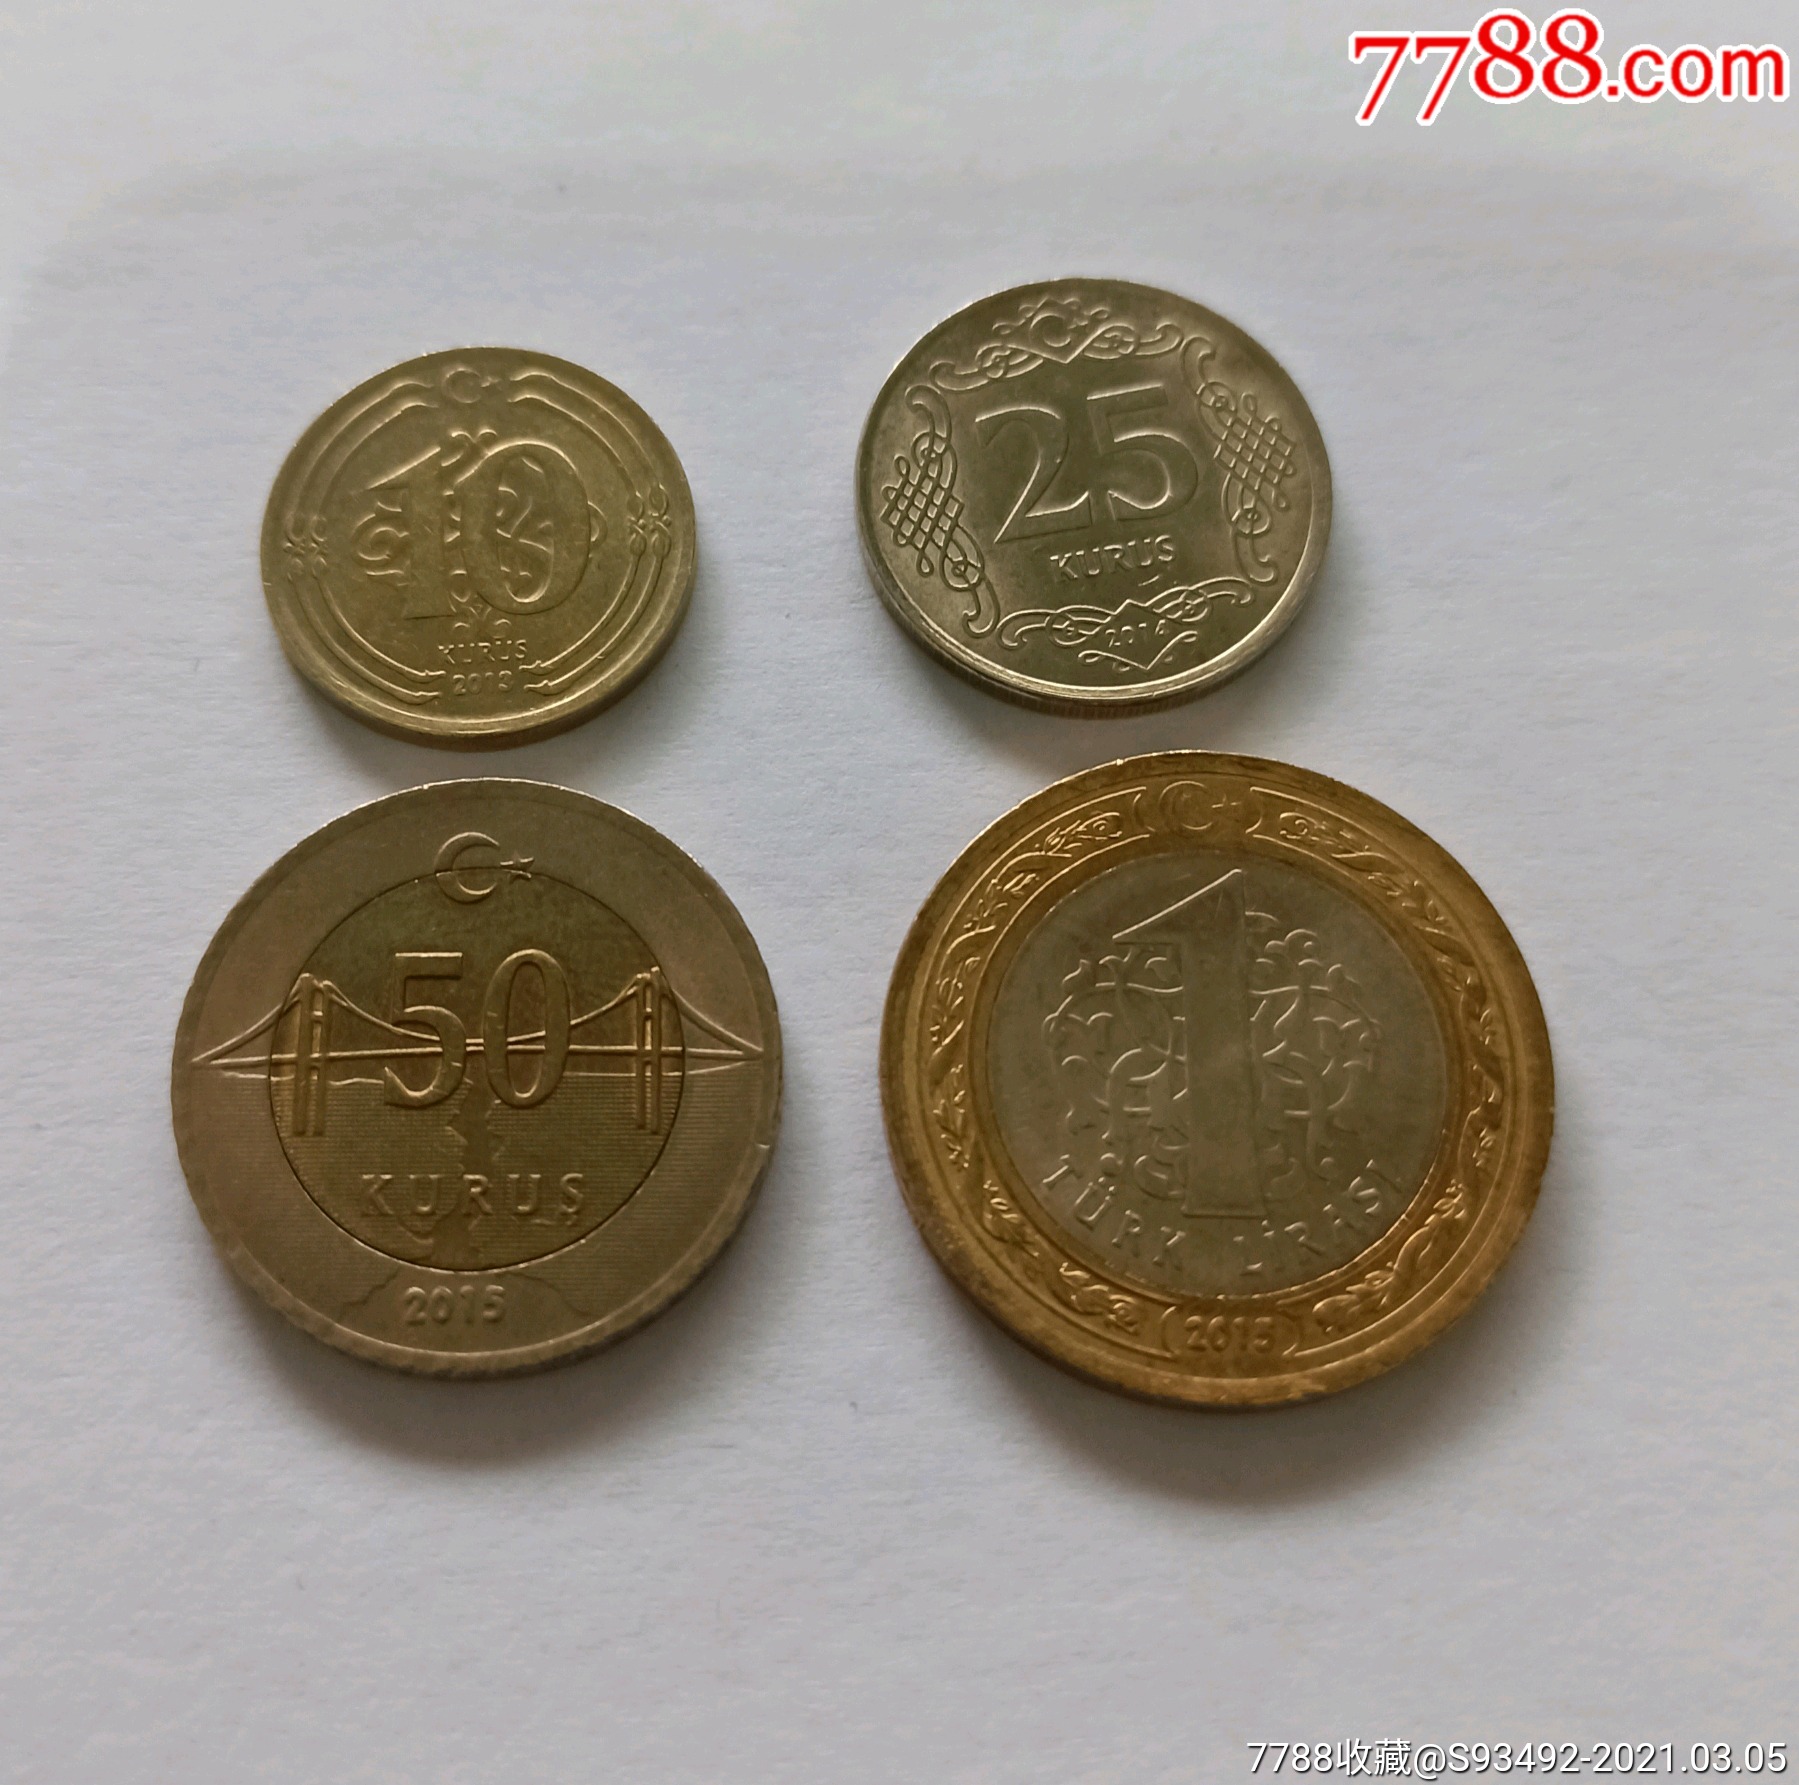 土耳其一元硬币图片图片